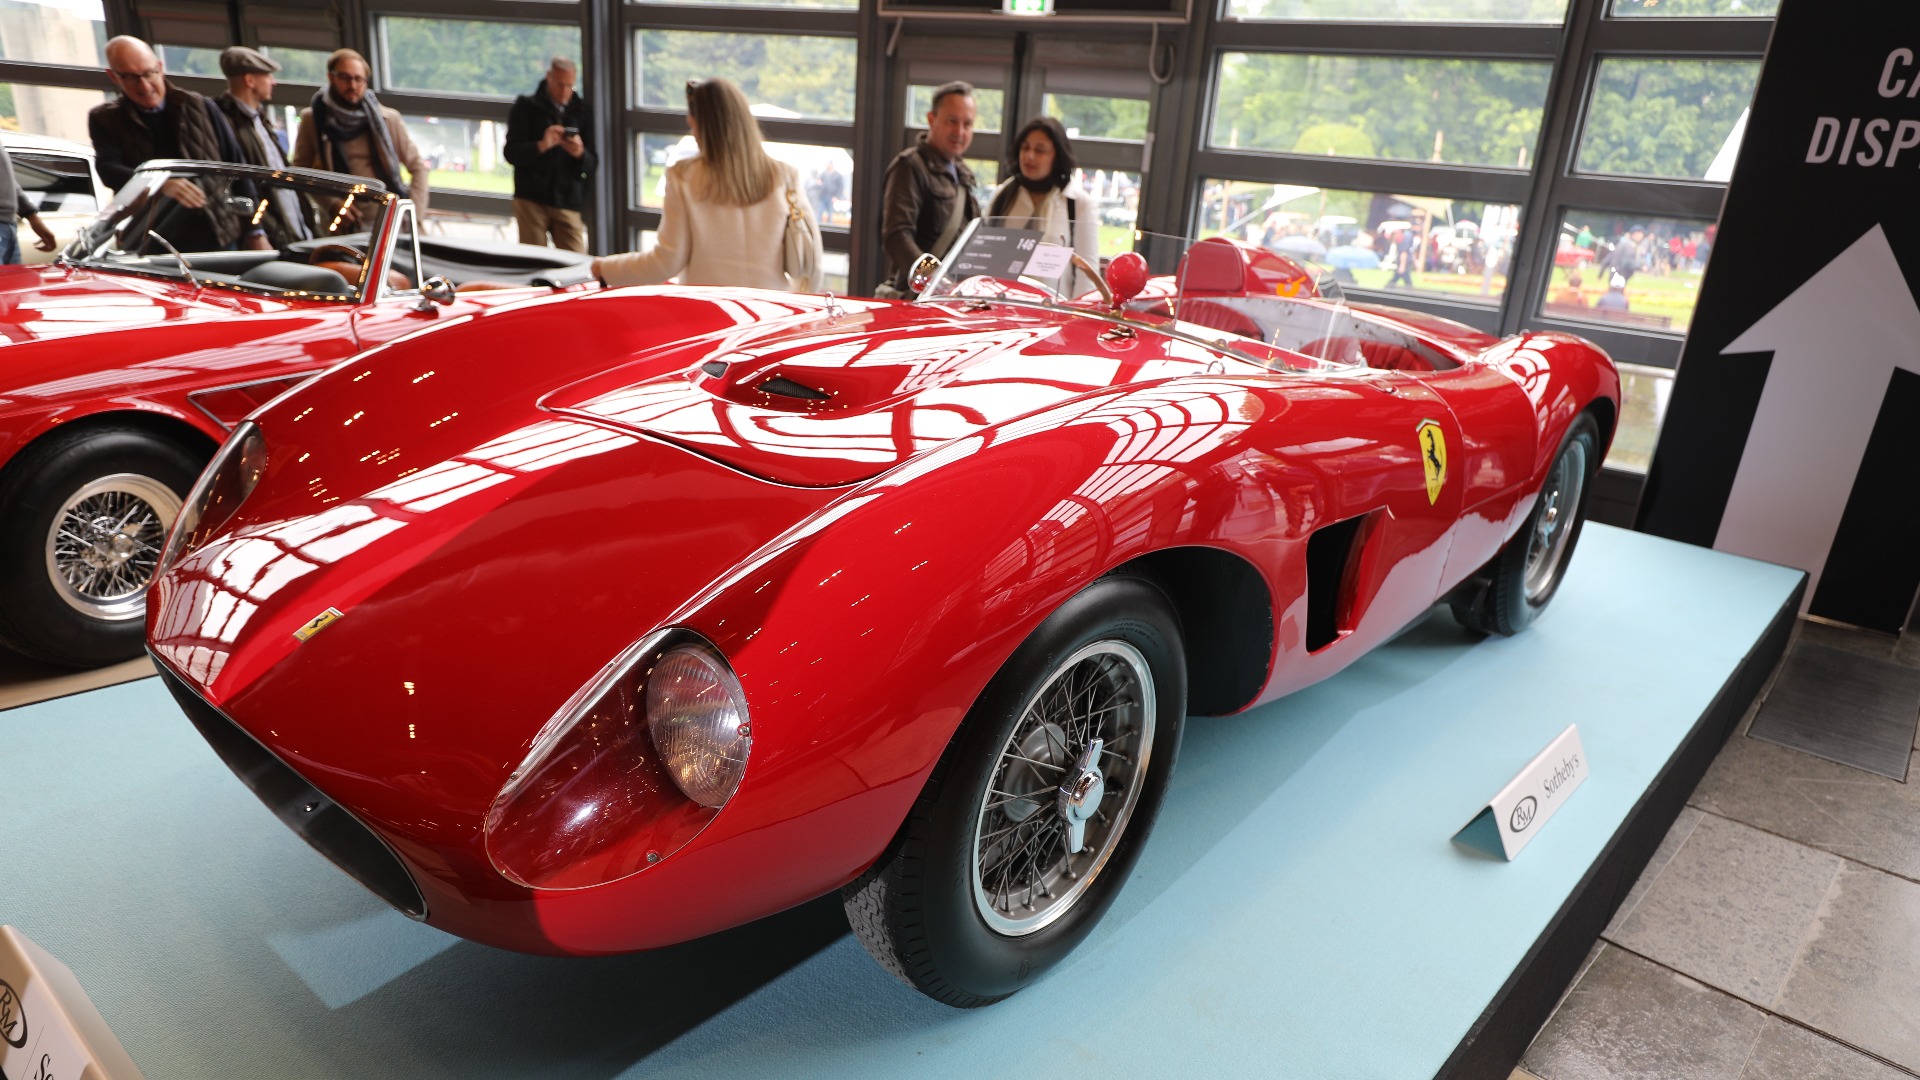 1956 Ferrari 500 TR Spider -  42 639 725 kr